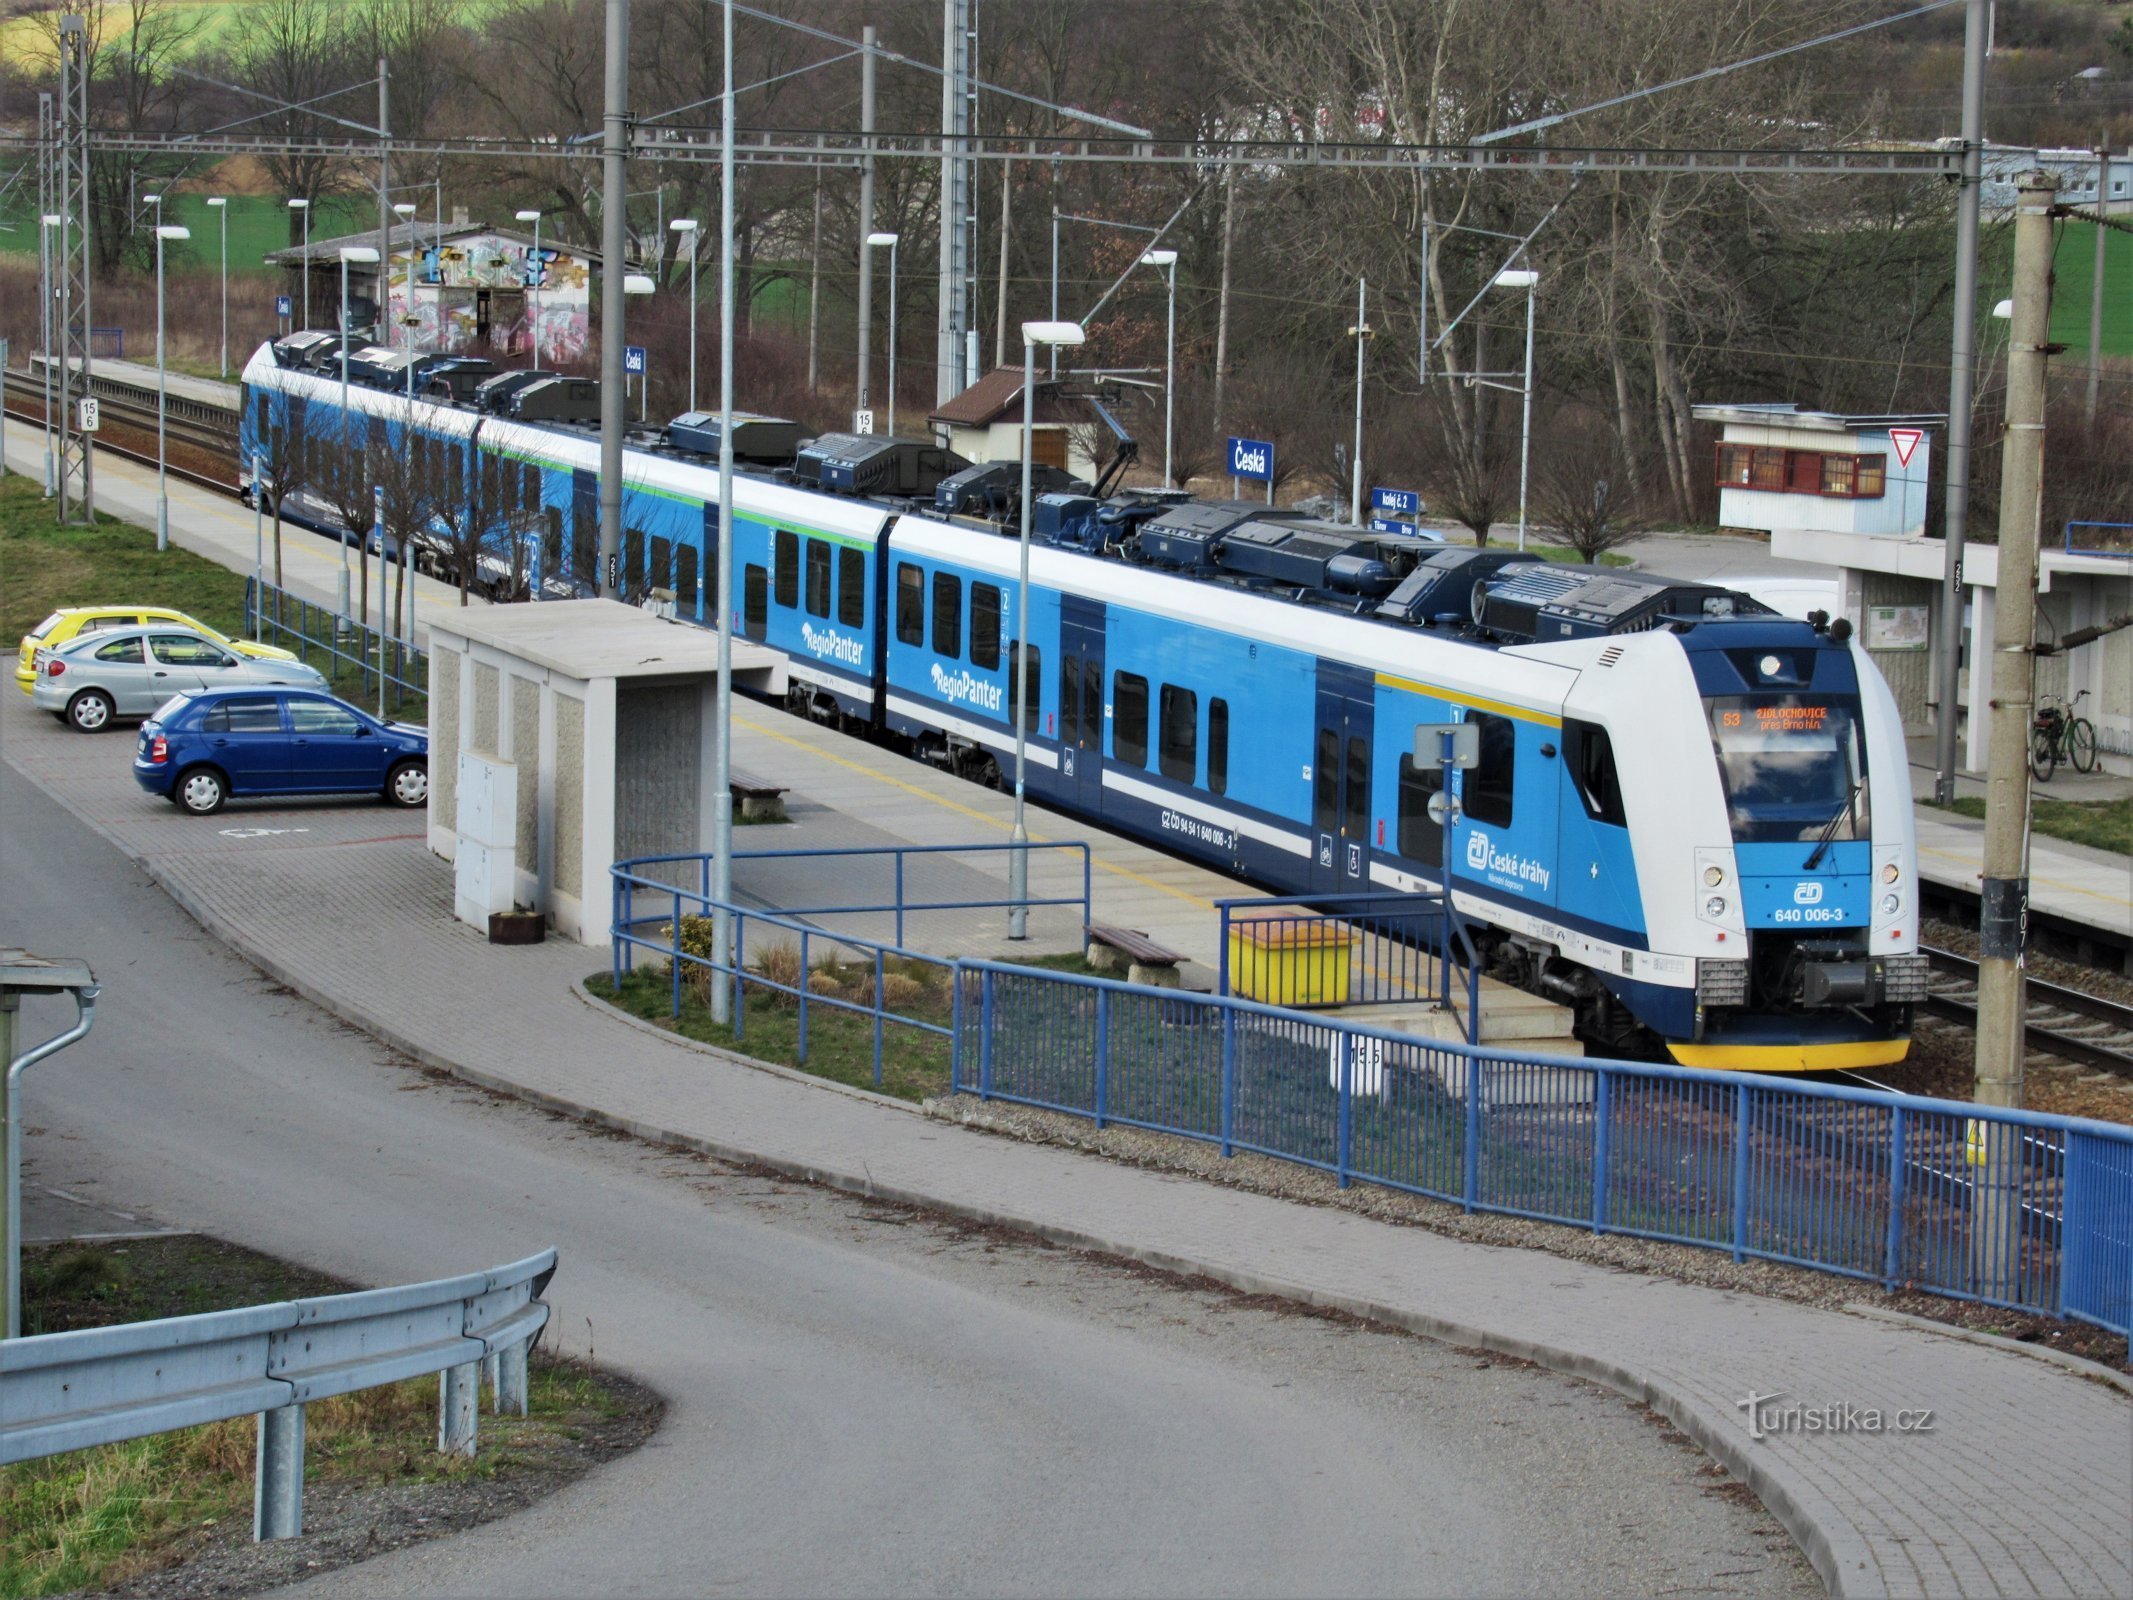 Platform mod Brno